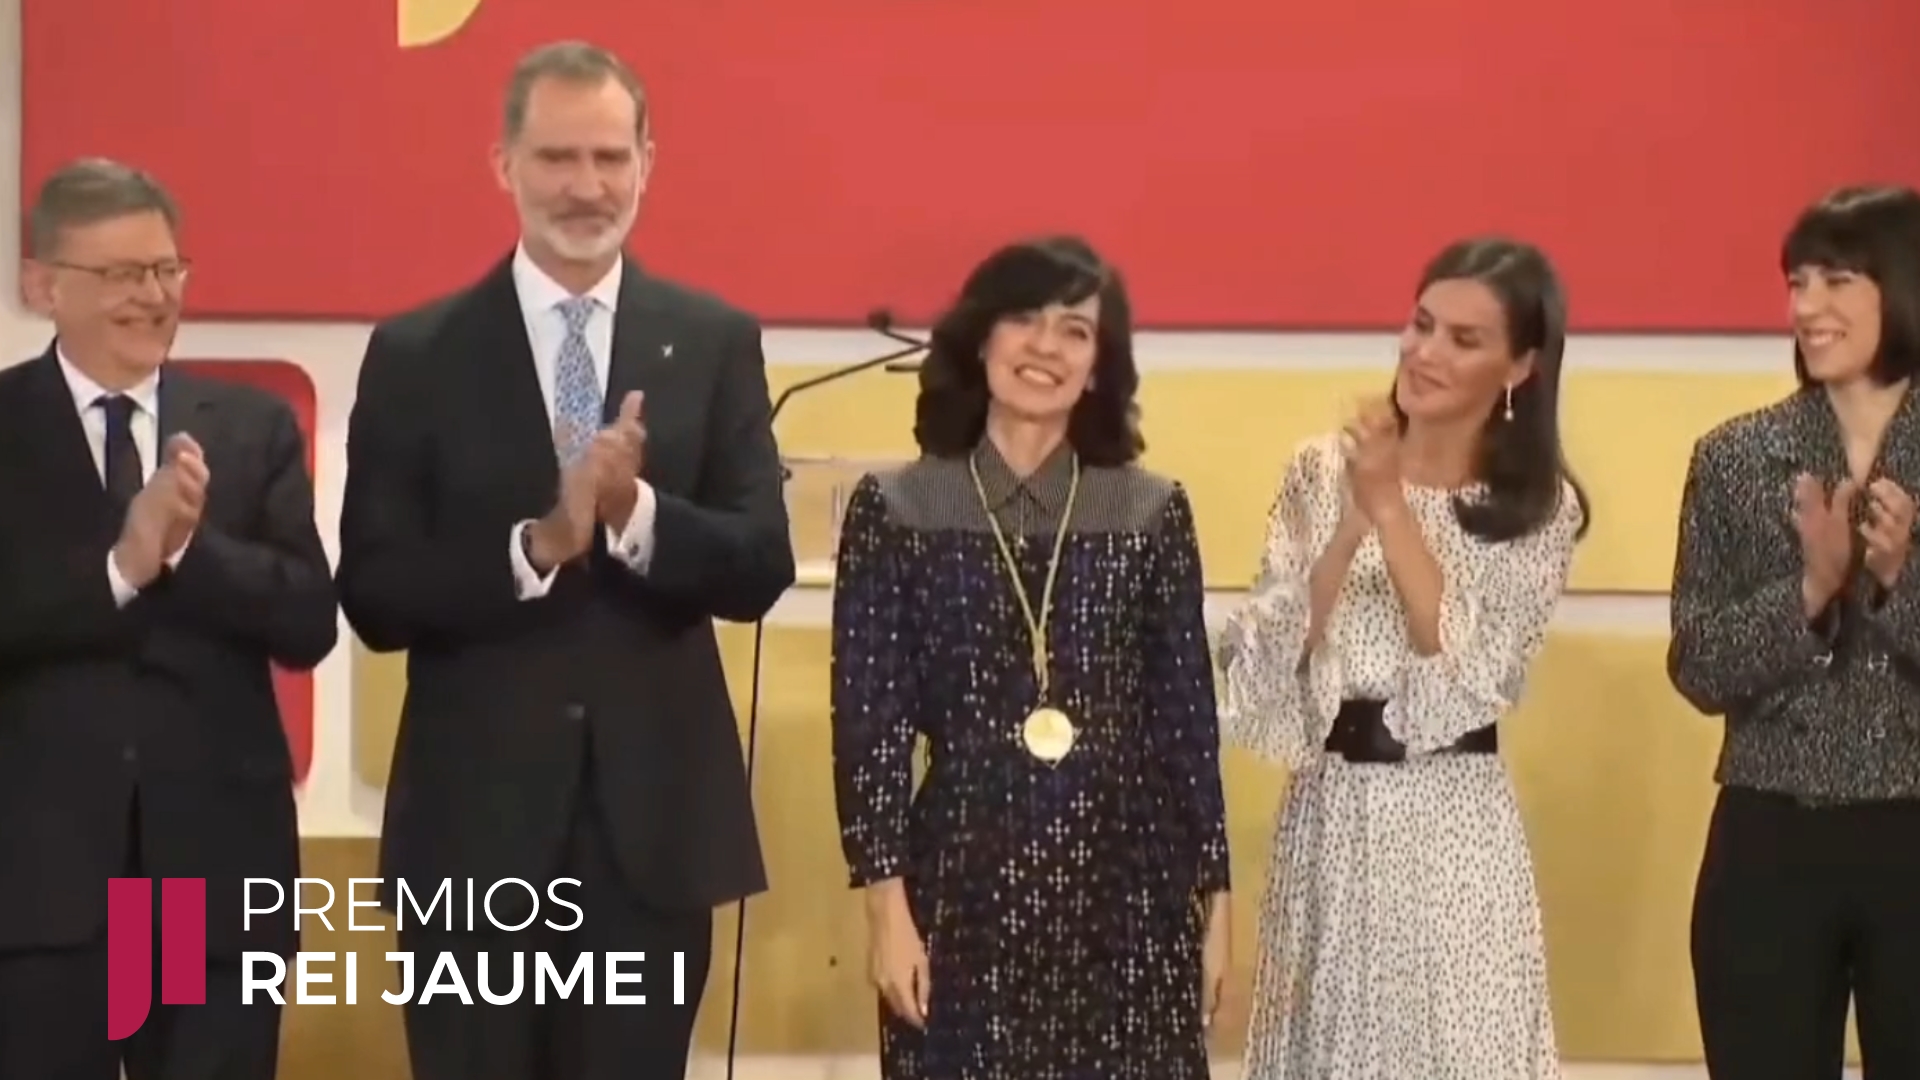 Monserrat Calleja, Winner of The Jaume I Award in the New Technologies 2022